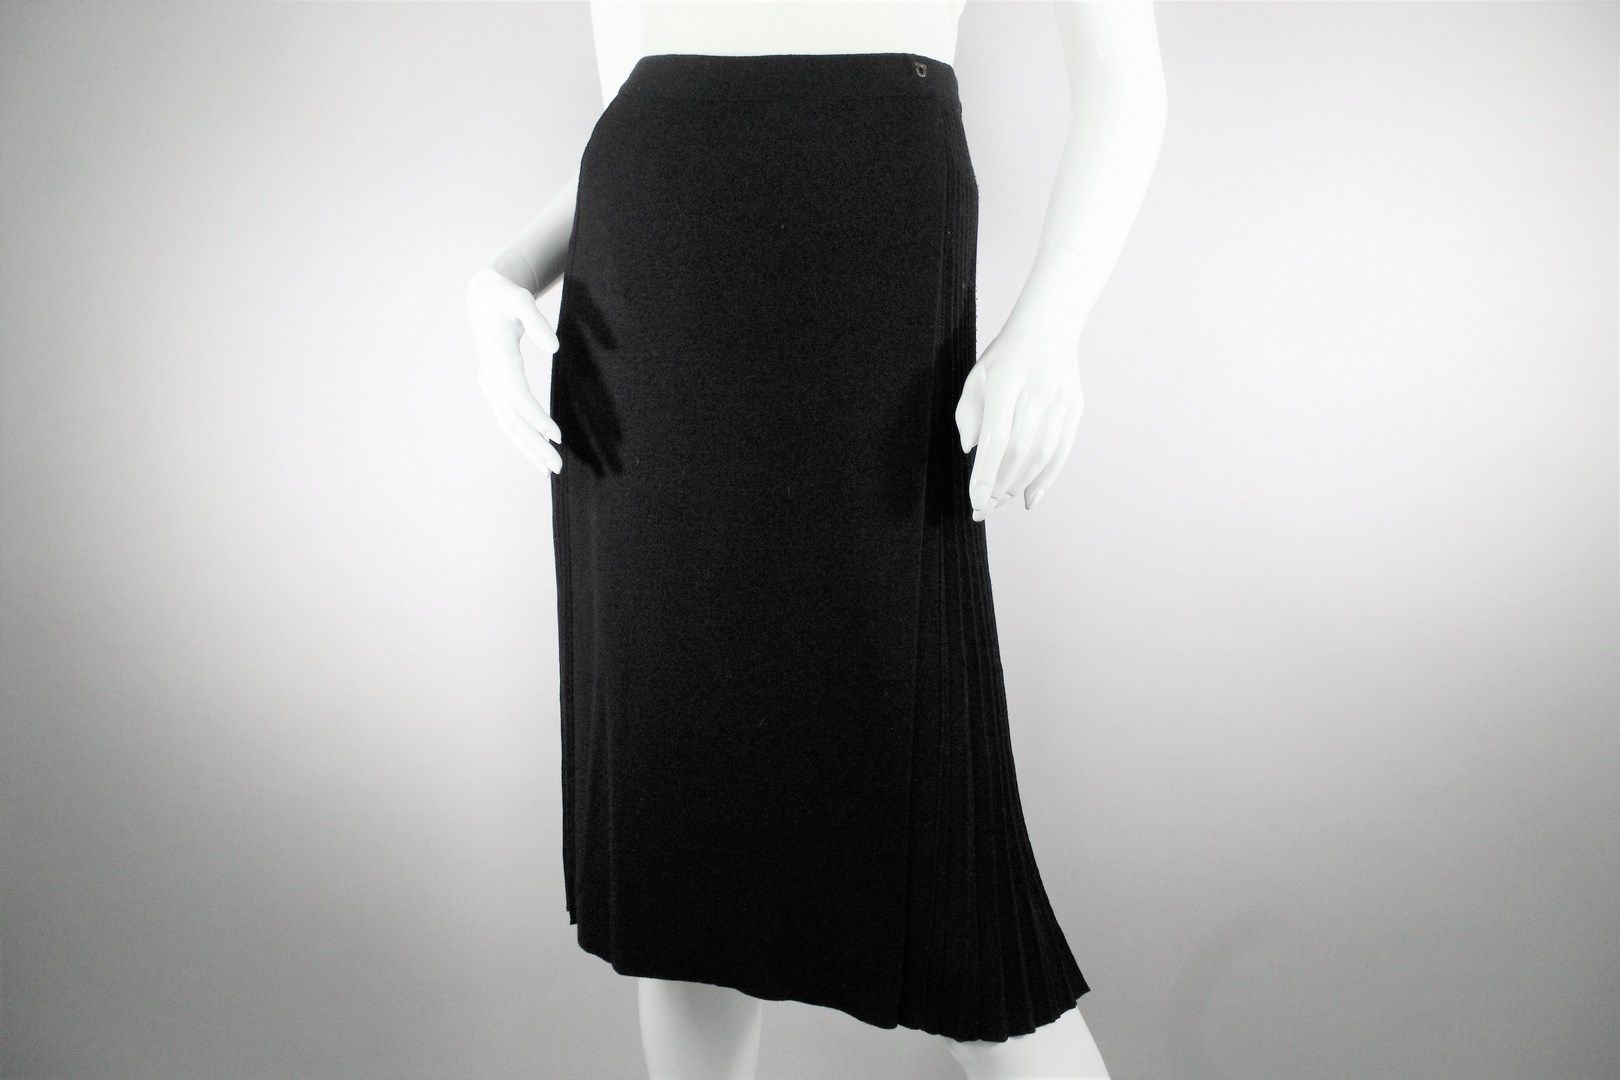 Null 萨尔瓦托雷-费拉格慕



黑色原生羊毛针织部分褶皱裹身裙，腰部有弹性。

腰带上有一个小的水钻珠宝细节，上面有公司的徽章。



尺寸：S

长度：&hellip;